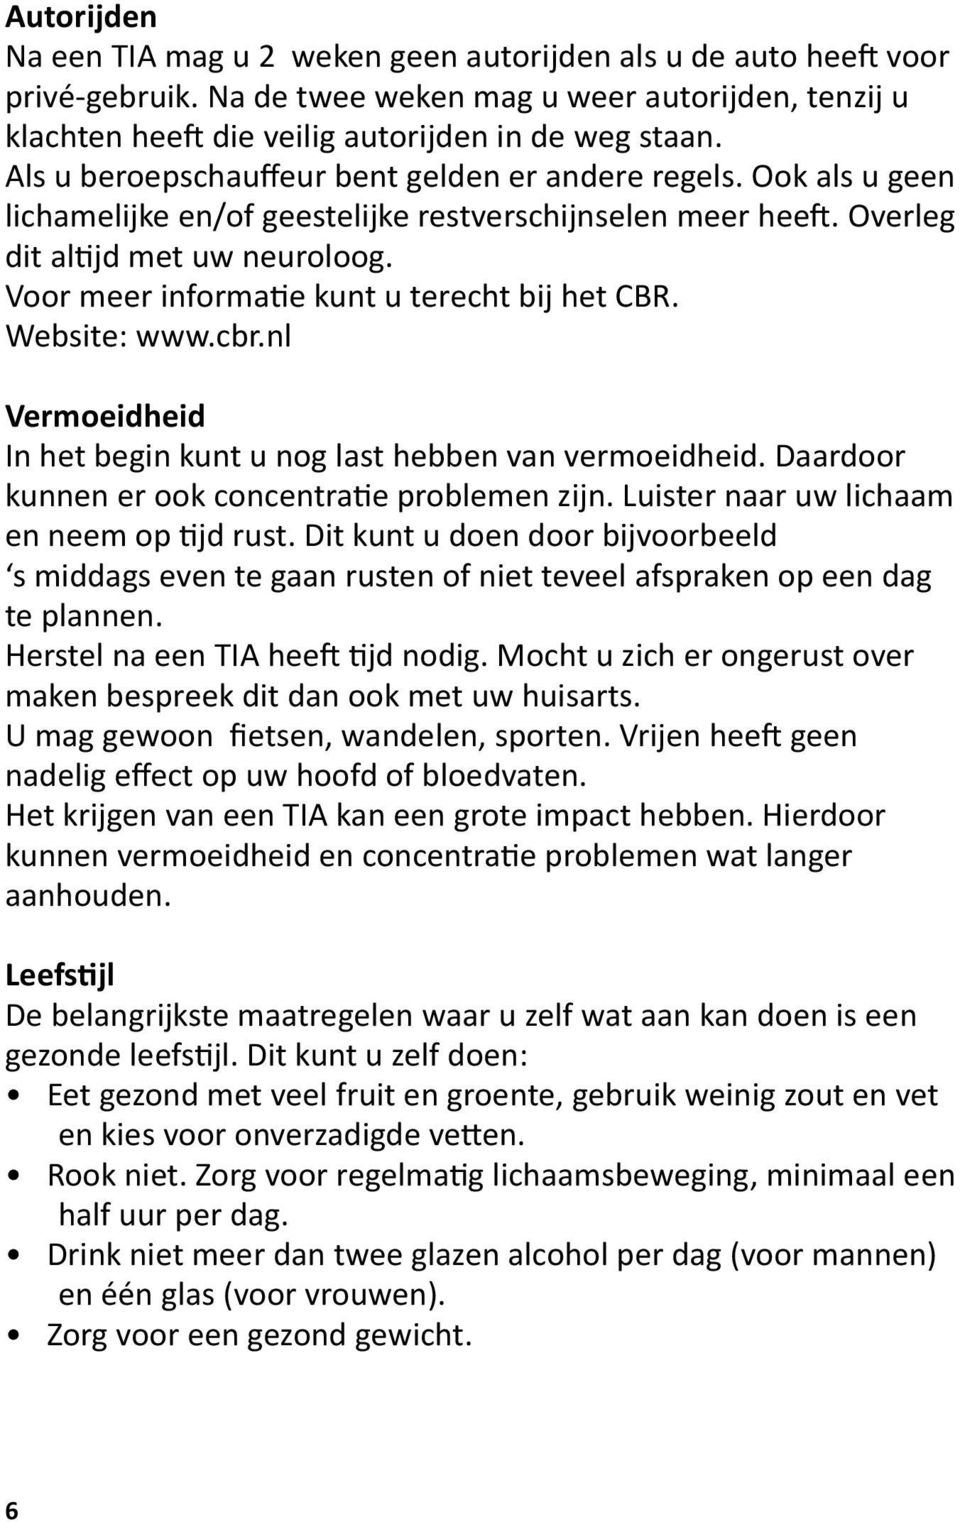 Voor meer informatie kunt u terecht bij het CBR. Website: www.cbr.nl Vermoeidheid In het begin kunt u nog last hebben van vermoeidheid. Daardoor kunnen er ook concentratie problemen zijn.